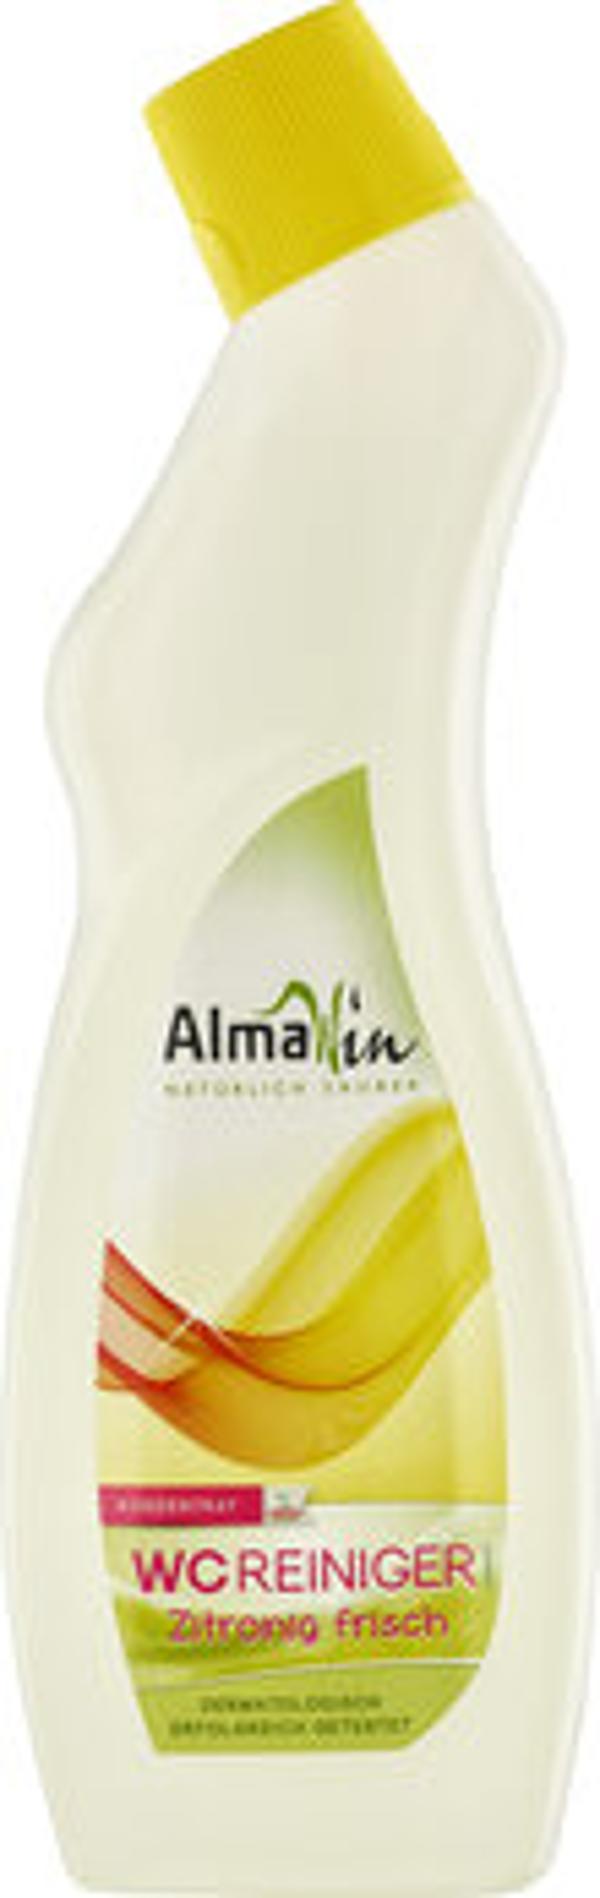 Produktfoto zu Almawin WC-Reiniger zitronig frisch 750ml